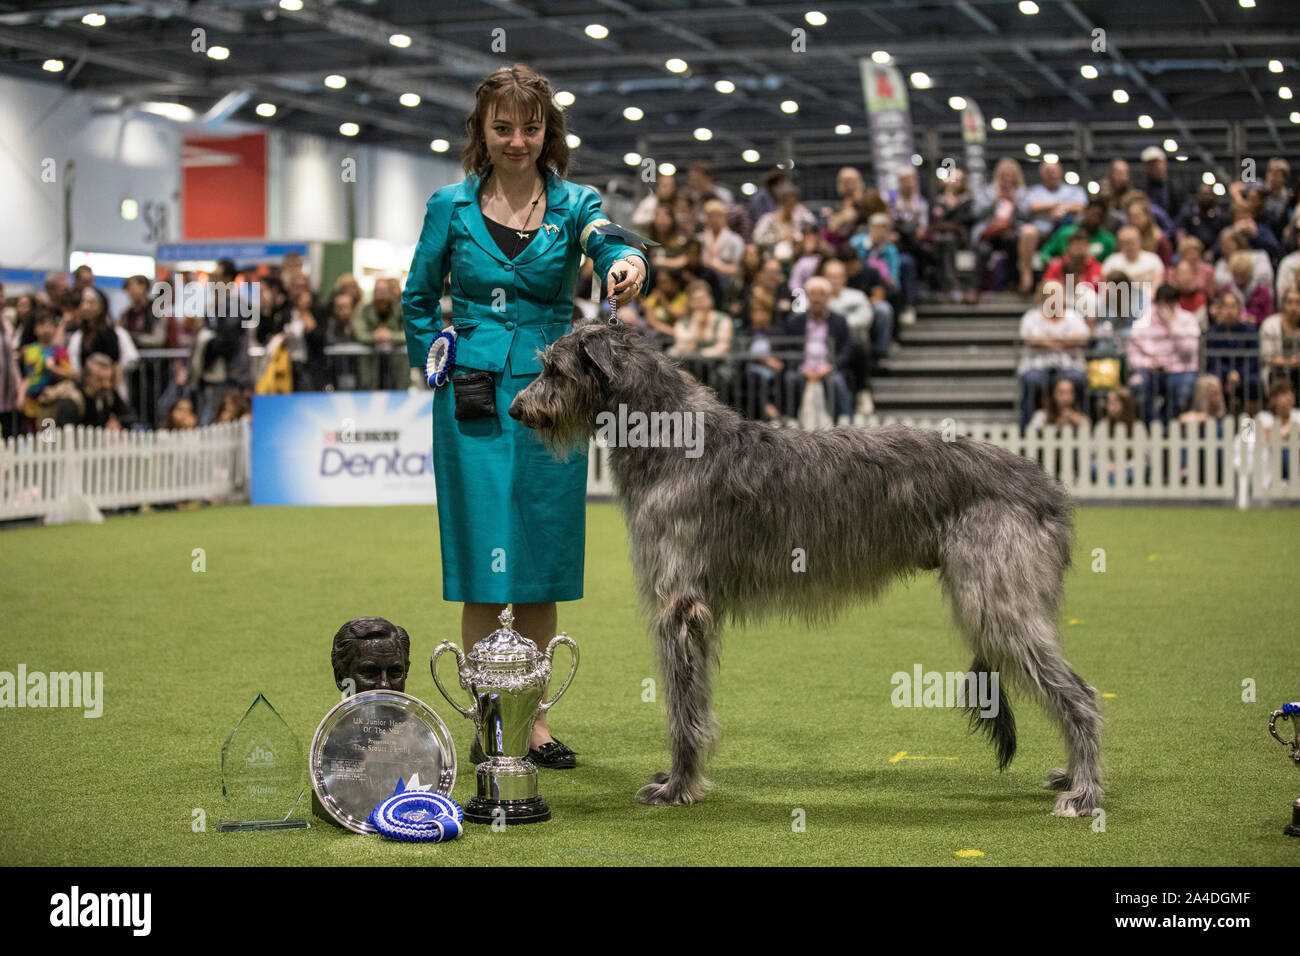 Der Kennel Club Entdeckung Hunde Ausstellung in Excel London, UK Bild zeigt Abigail Levene Sieger in der abschließenden Beurteilung des britischen Junior Handler des Stockfoto